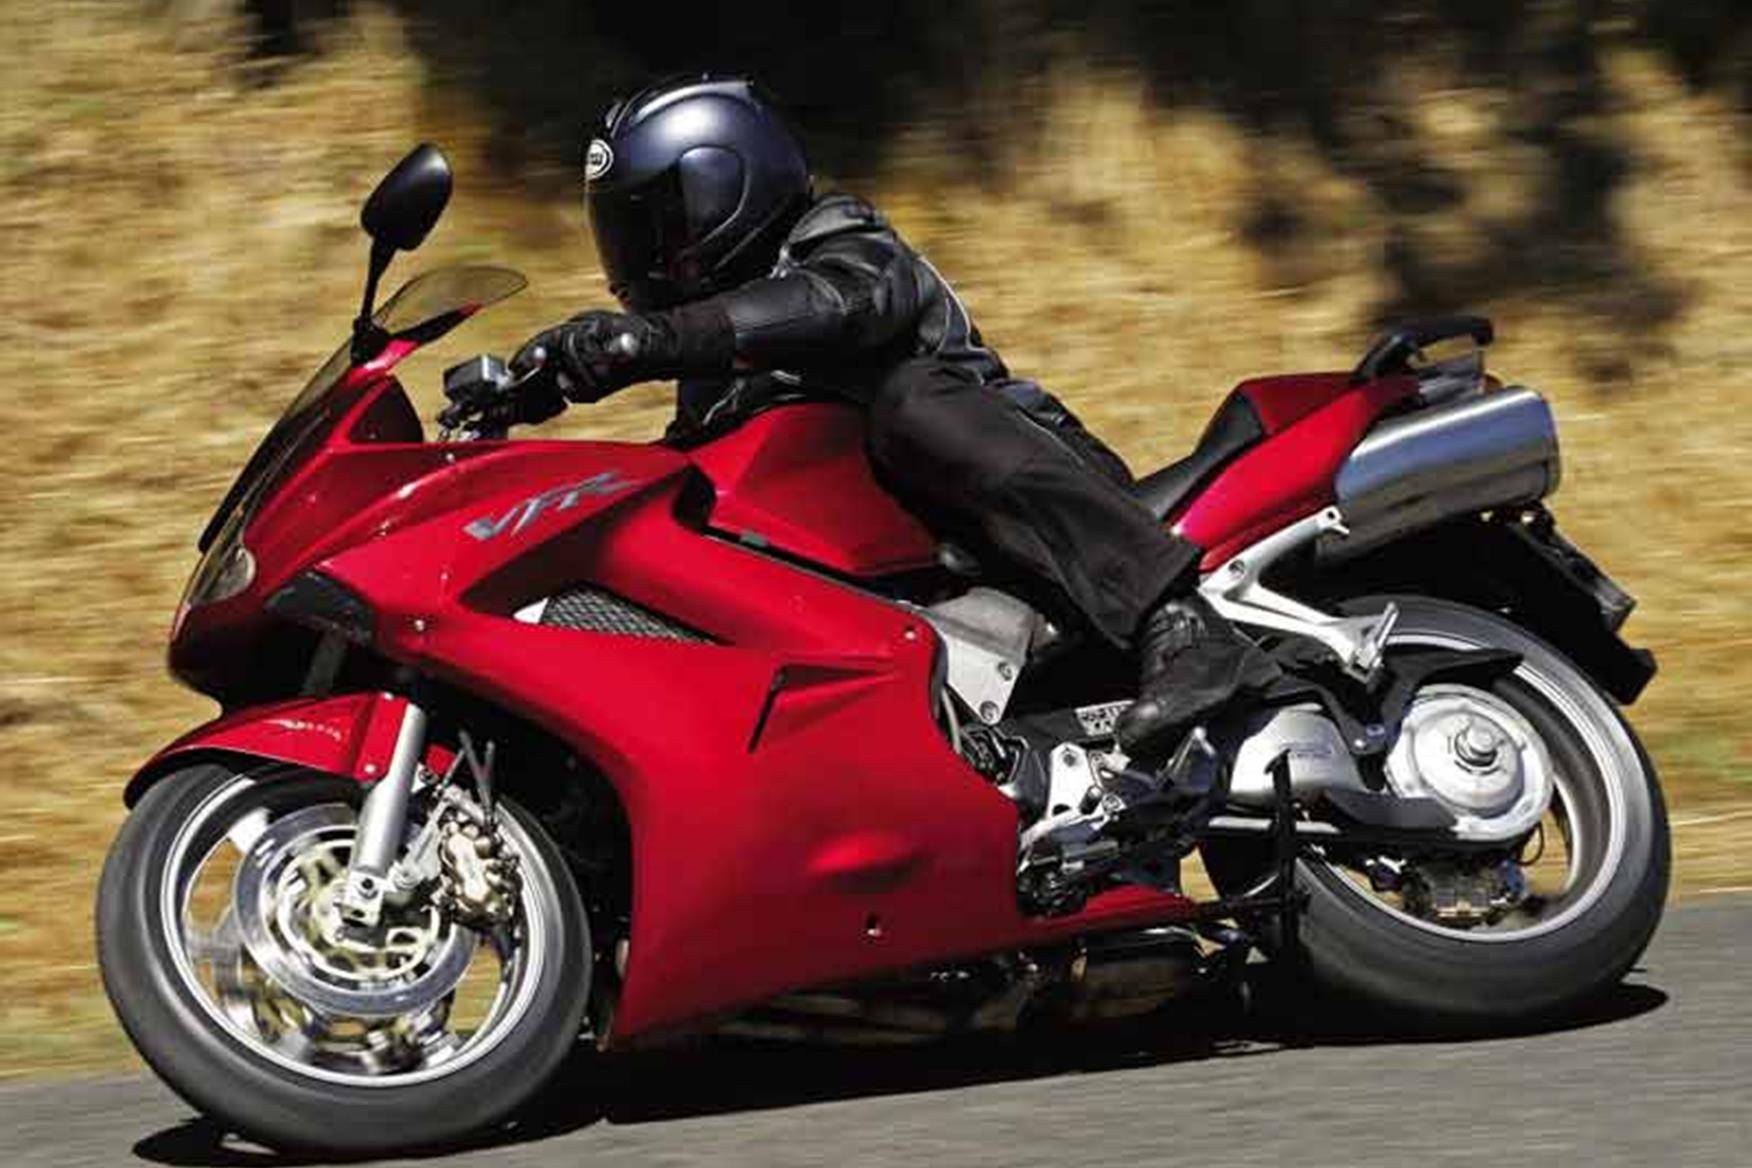 Хонда вфр 800 (honda vfr-800) - технические характеристики, преимущества и общие впечатления от мотоцикла. - все об авто и мото технике